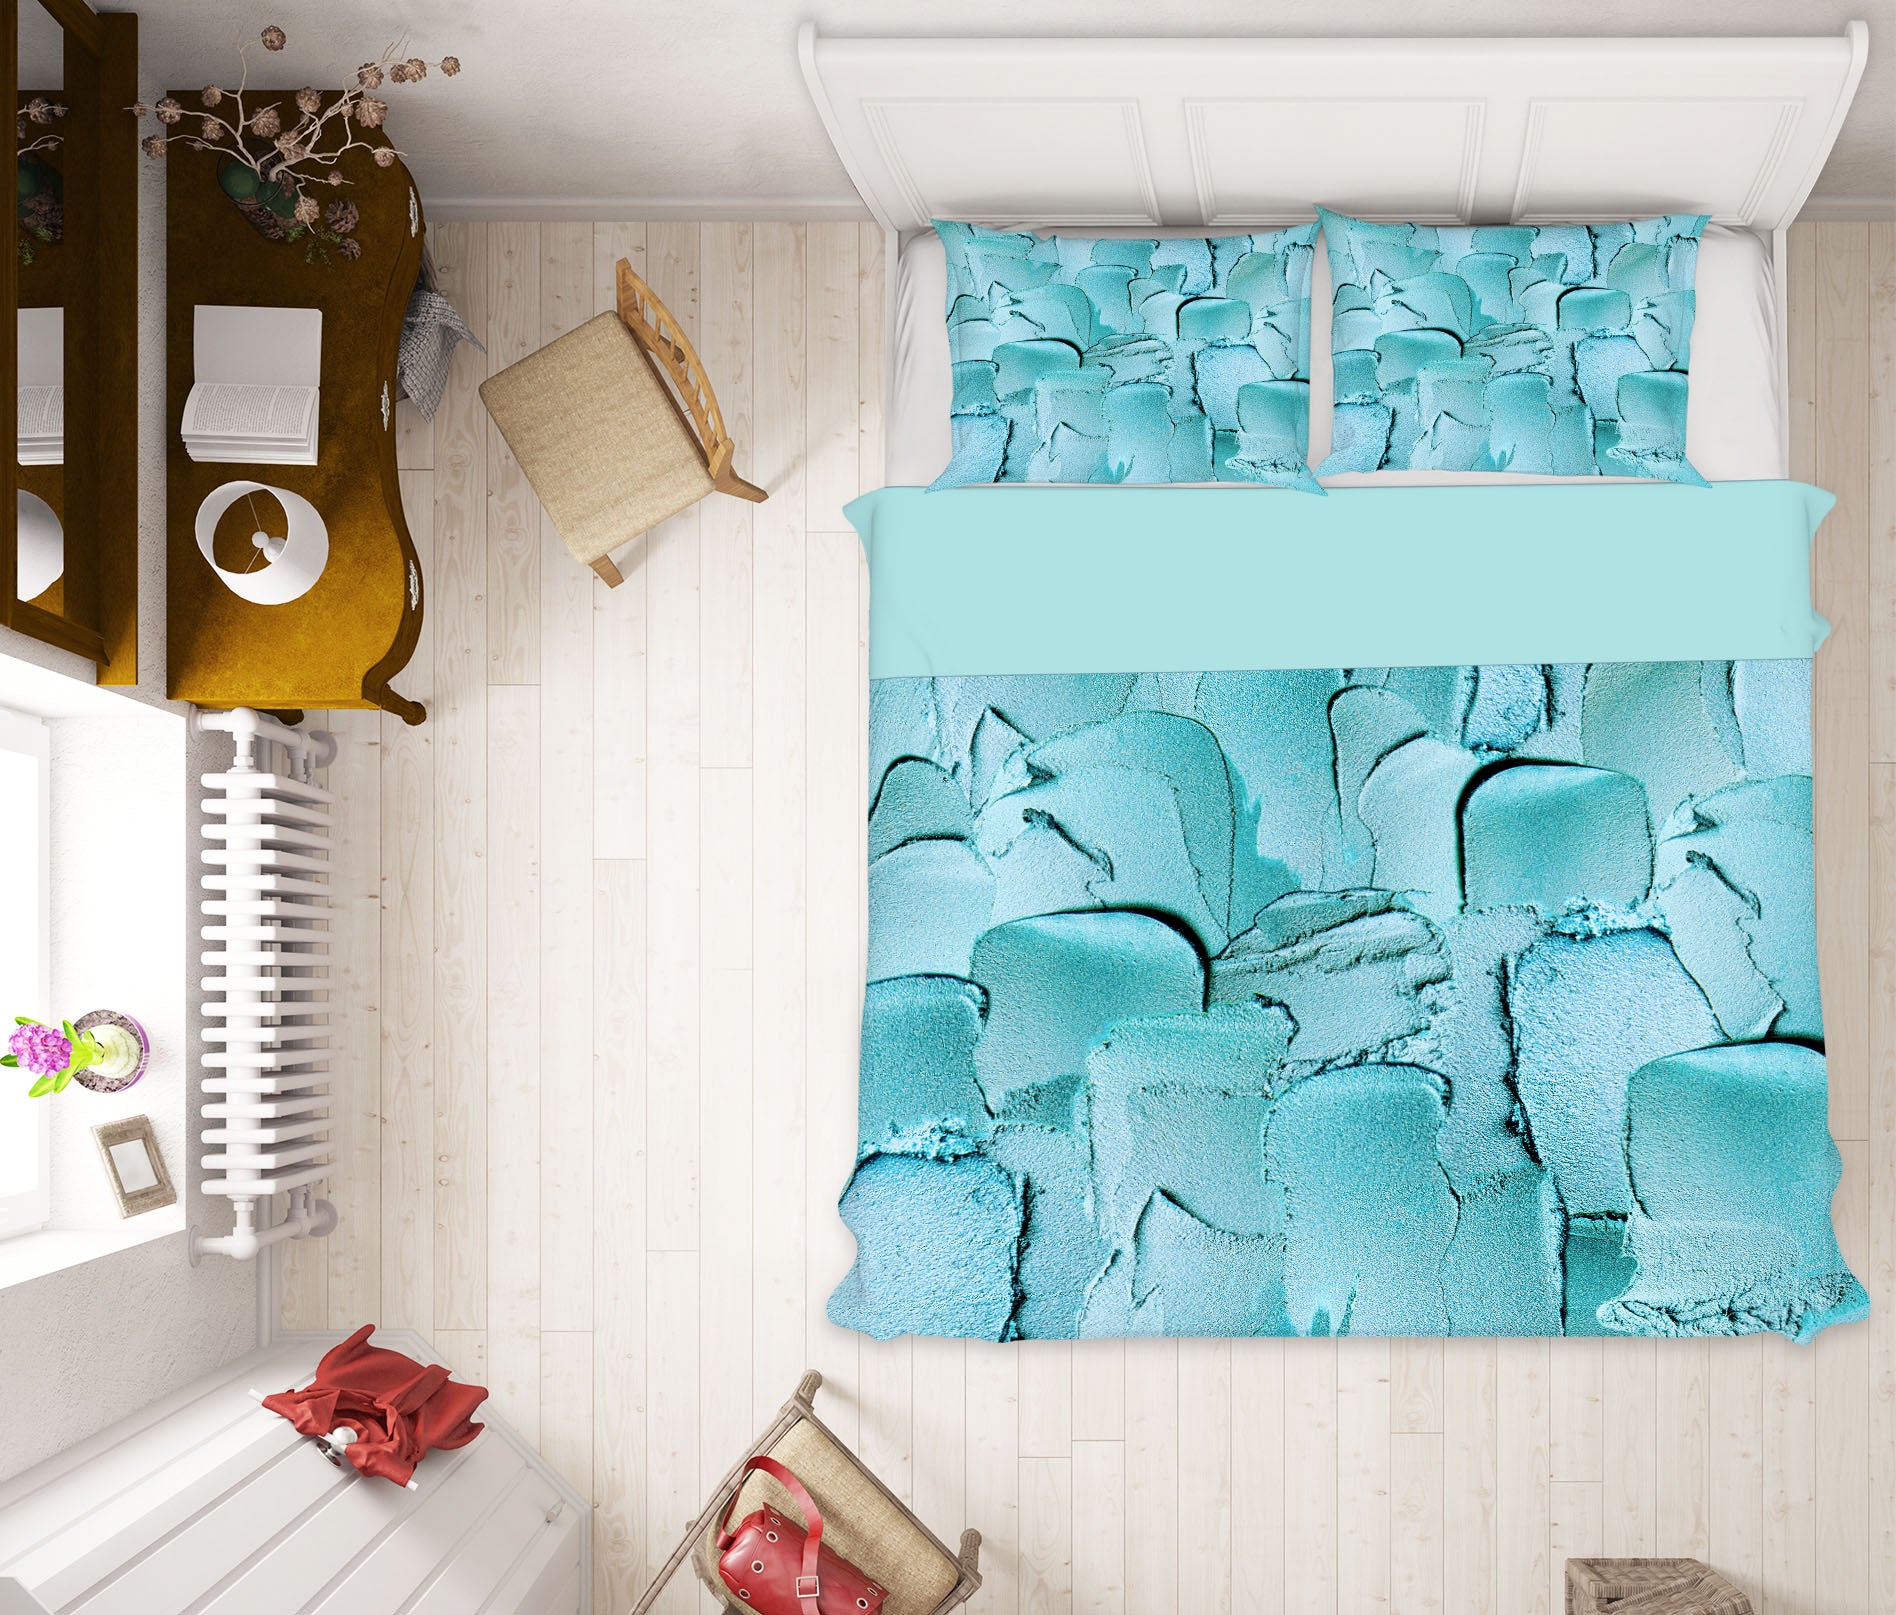 3D Blue Powder 18134 Uta Naumann Bedding Bed Pillowcases Quilt